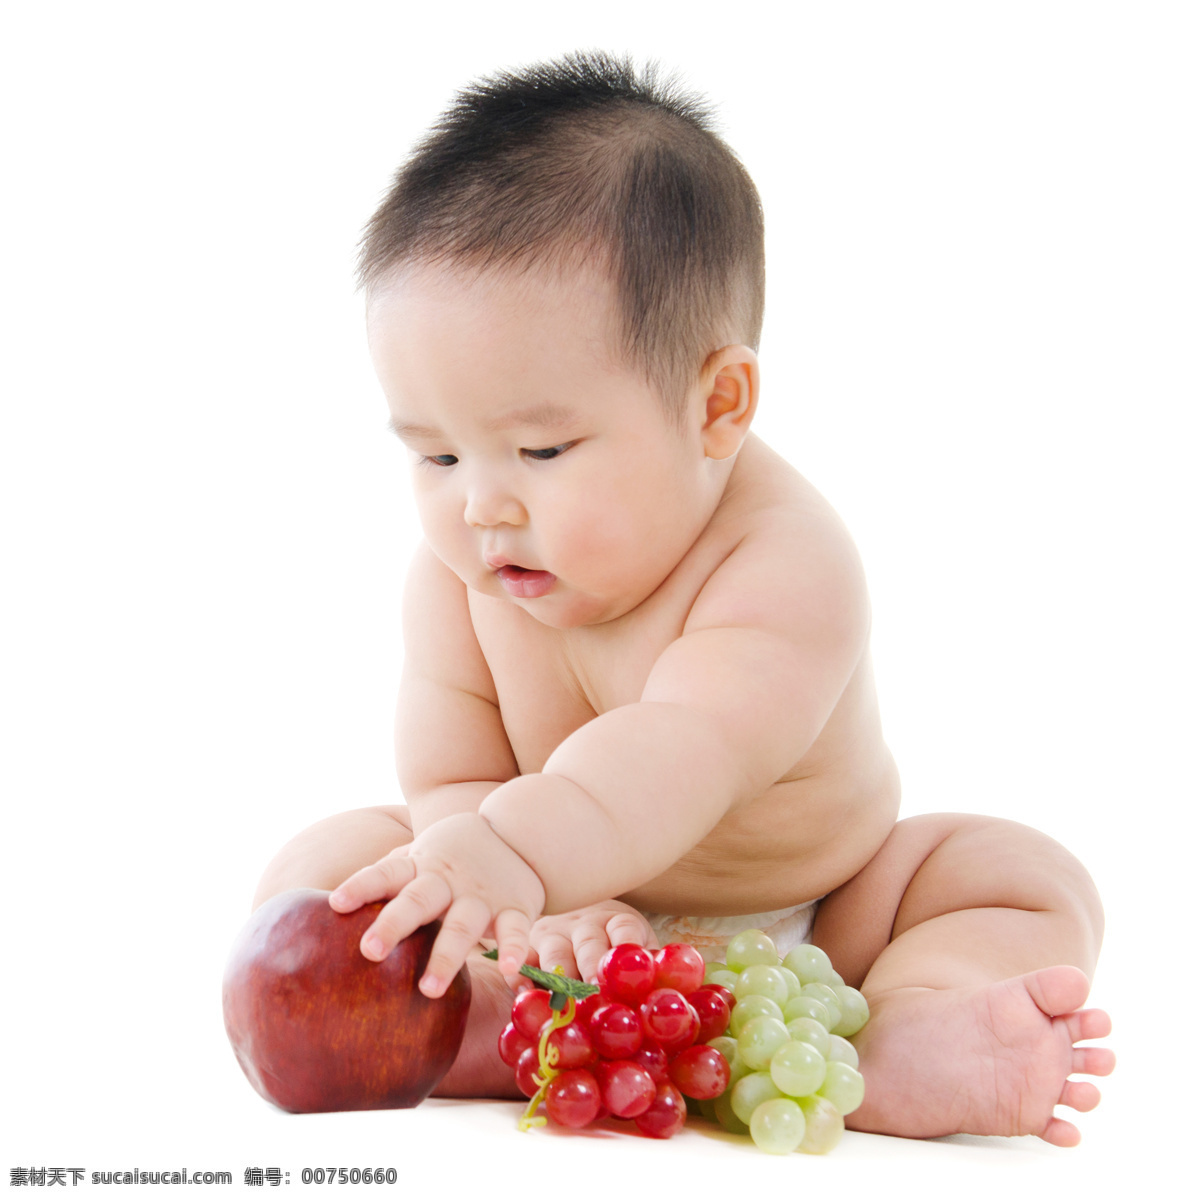 水果 婴儿 提子 苹果 孩子 儿童 人物摄影 人物图库 儿童图片 人物图片